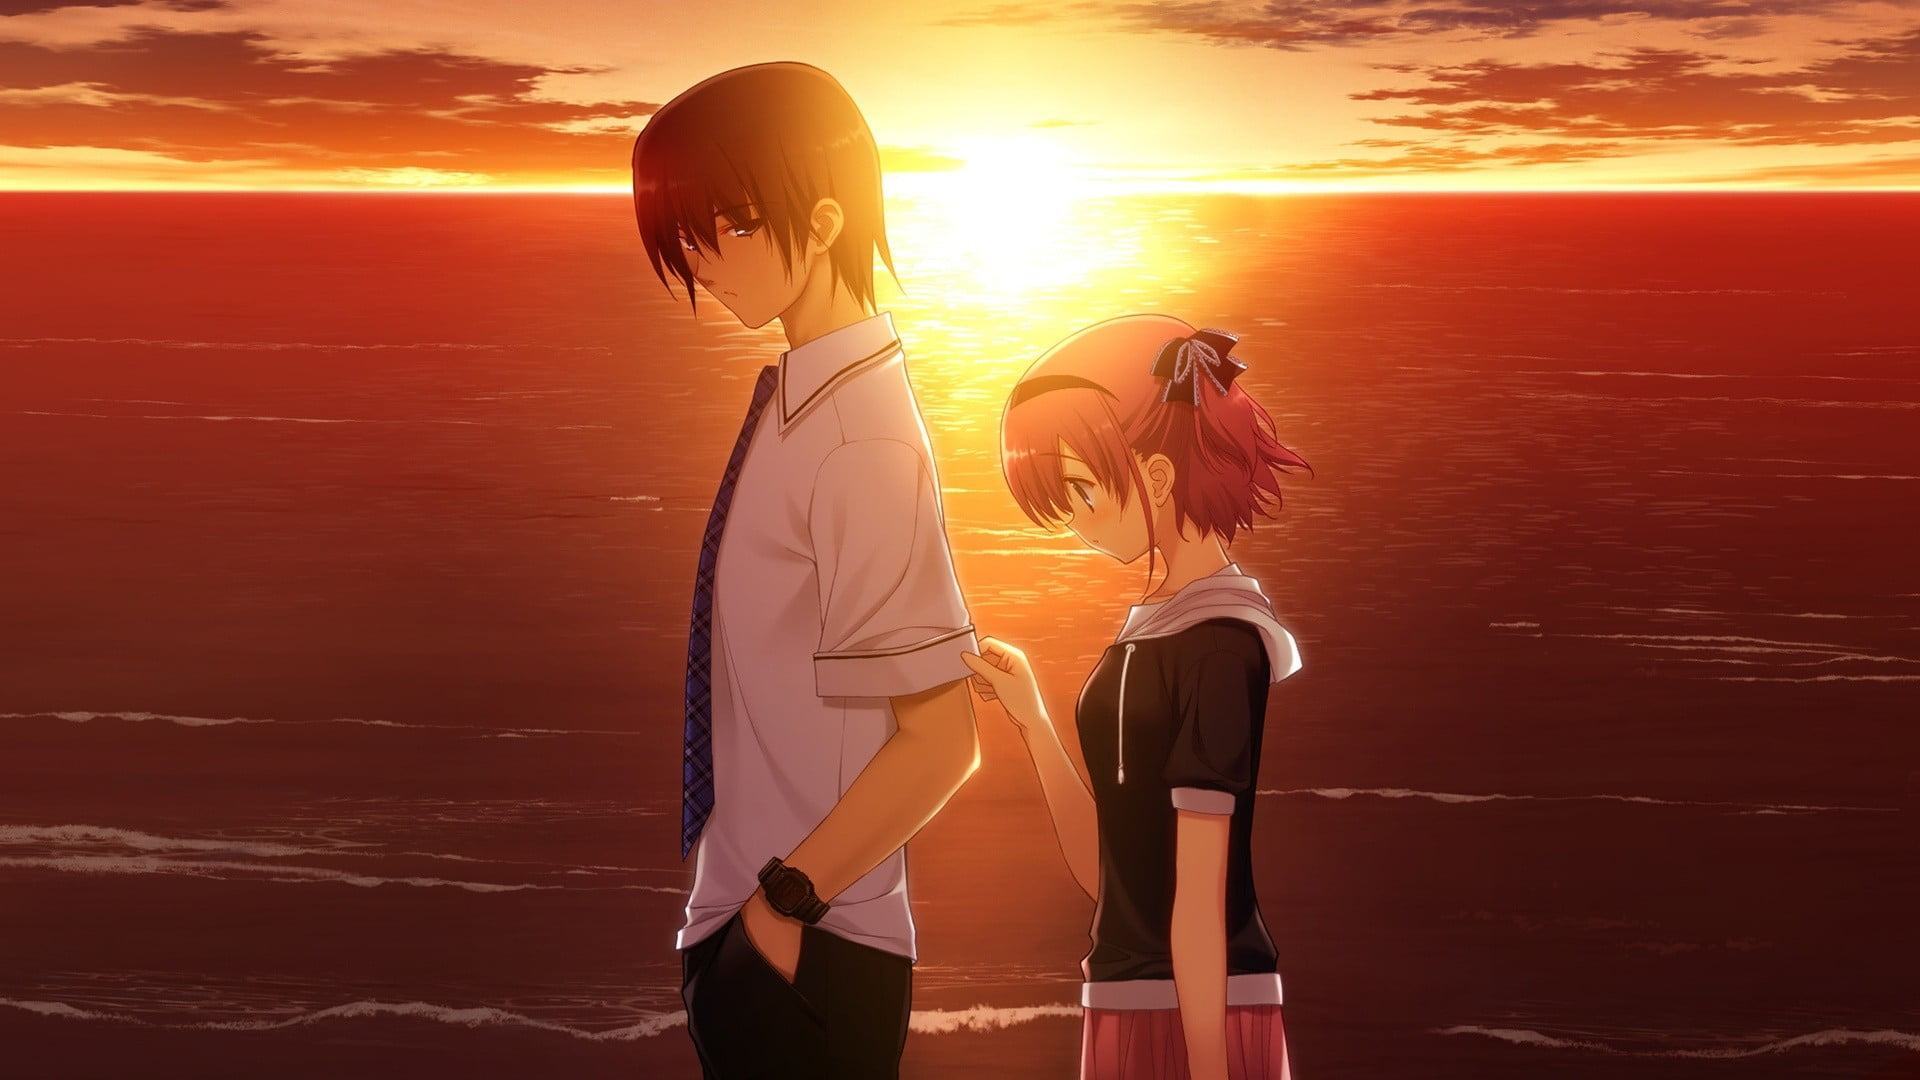 Hình ảnh Anime chuyện tình yêu của chàng và nàng khi hoàng hôn buông xuống